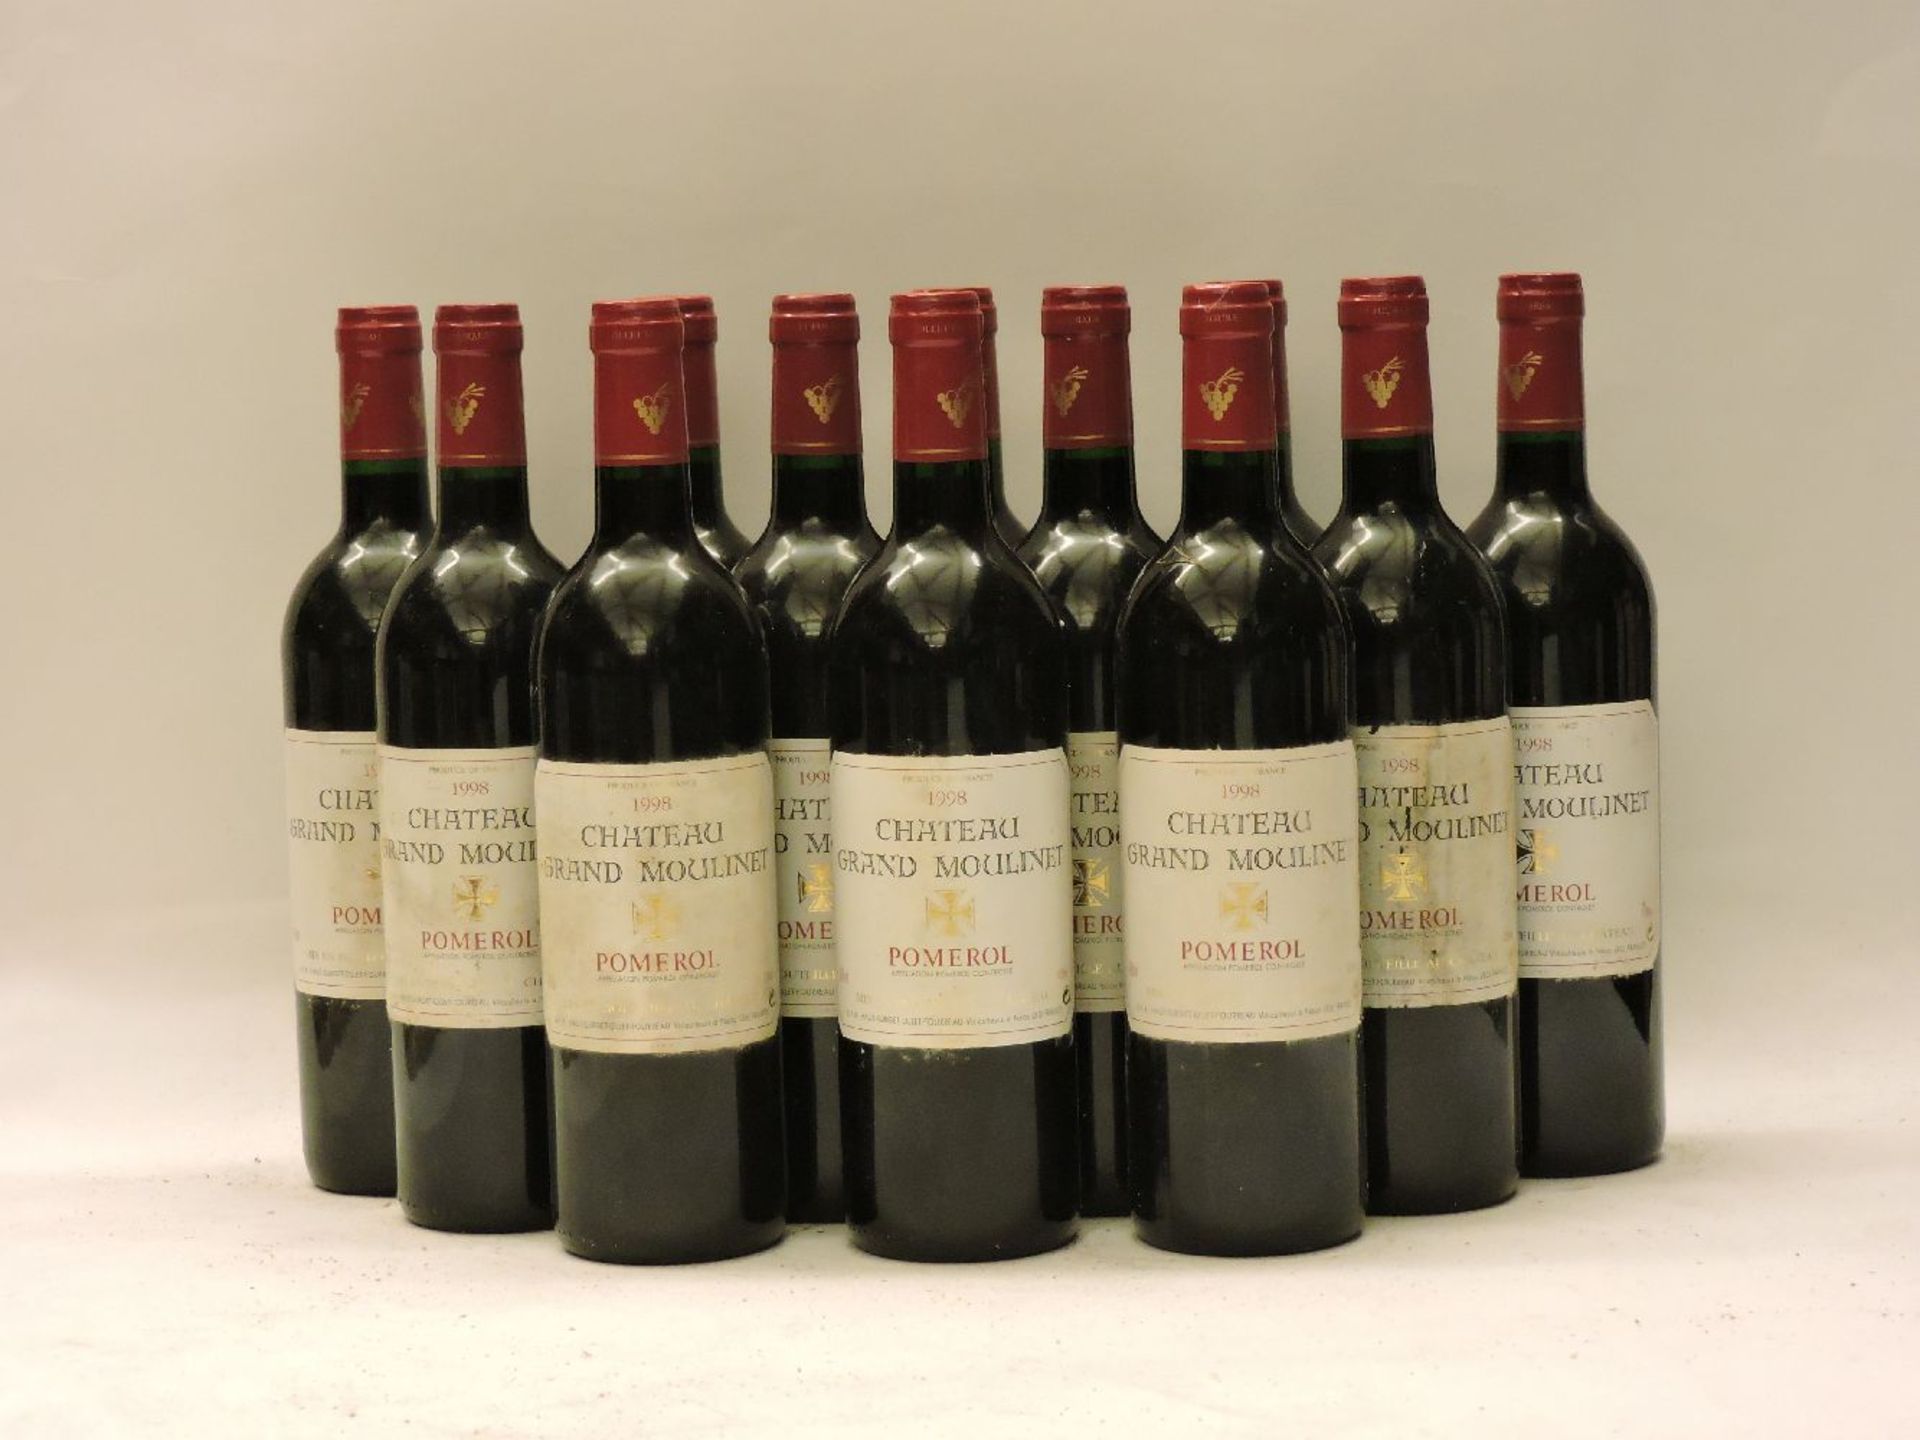 Grand Moulinet, Pomerol, 1998, twelve bottles (owc)